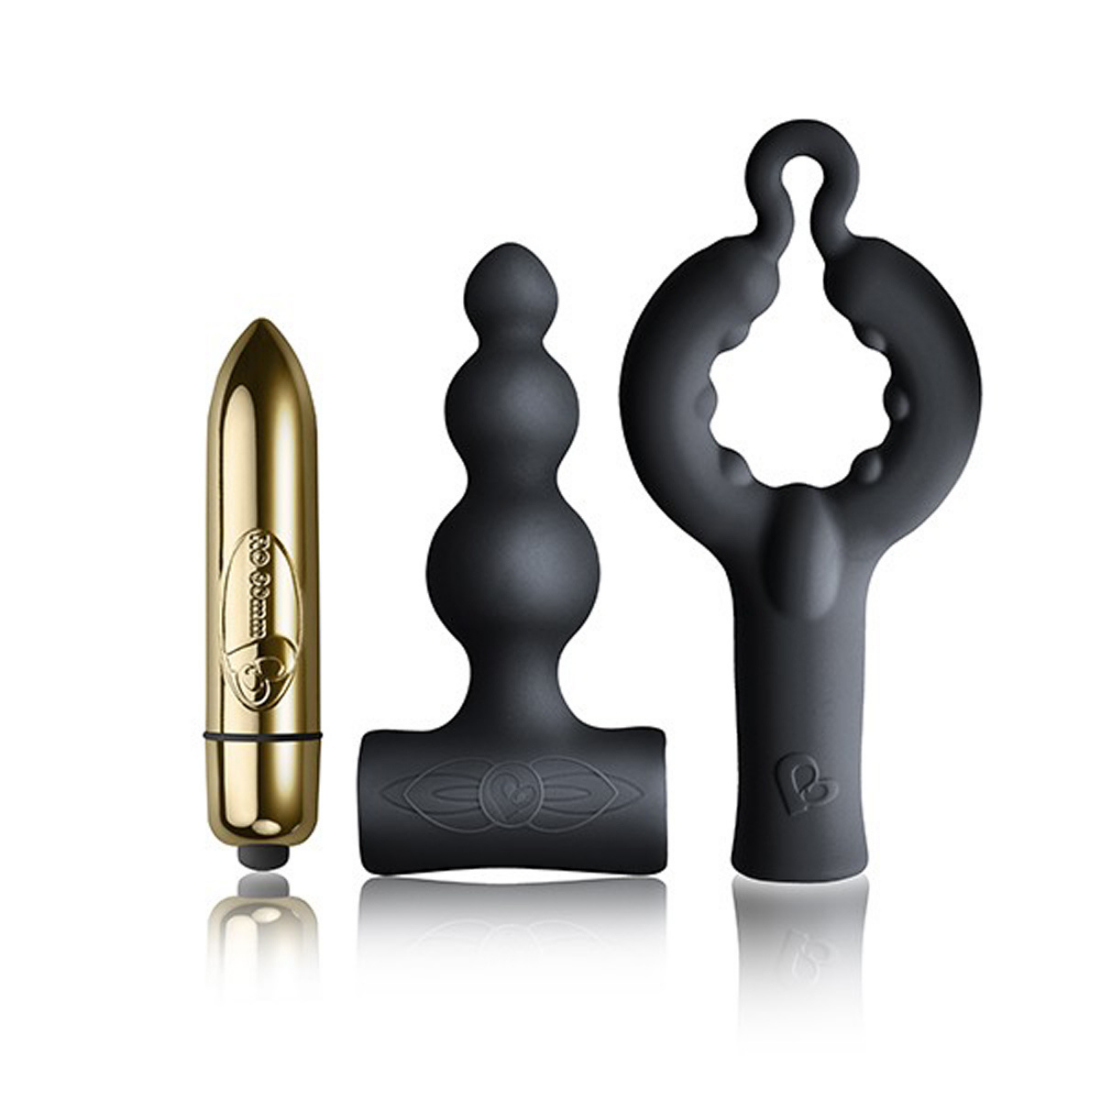 3-delige toy set bestaande, uit een gouden bullet vibrator en 1 zwarte anaal toy en 1 zwarte penis toy. Van het merk Rocks Off en te koop bij Flavourez.